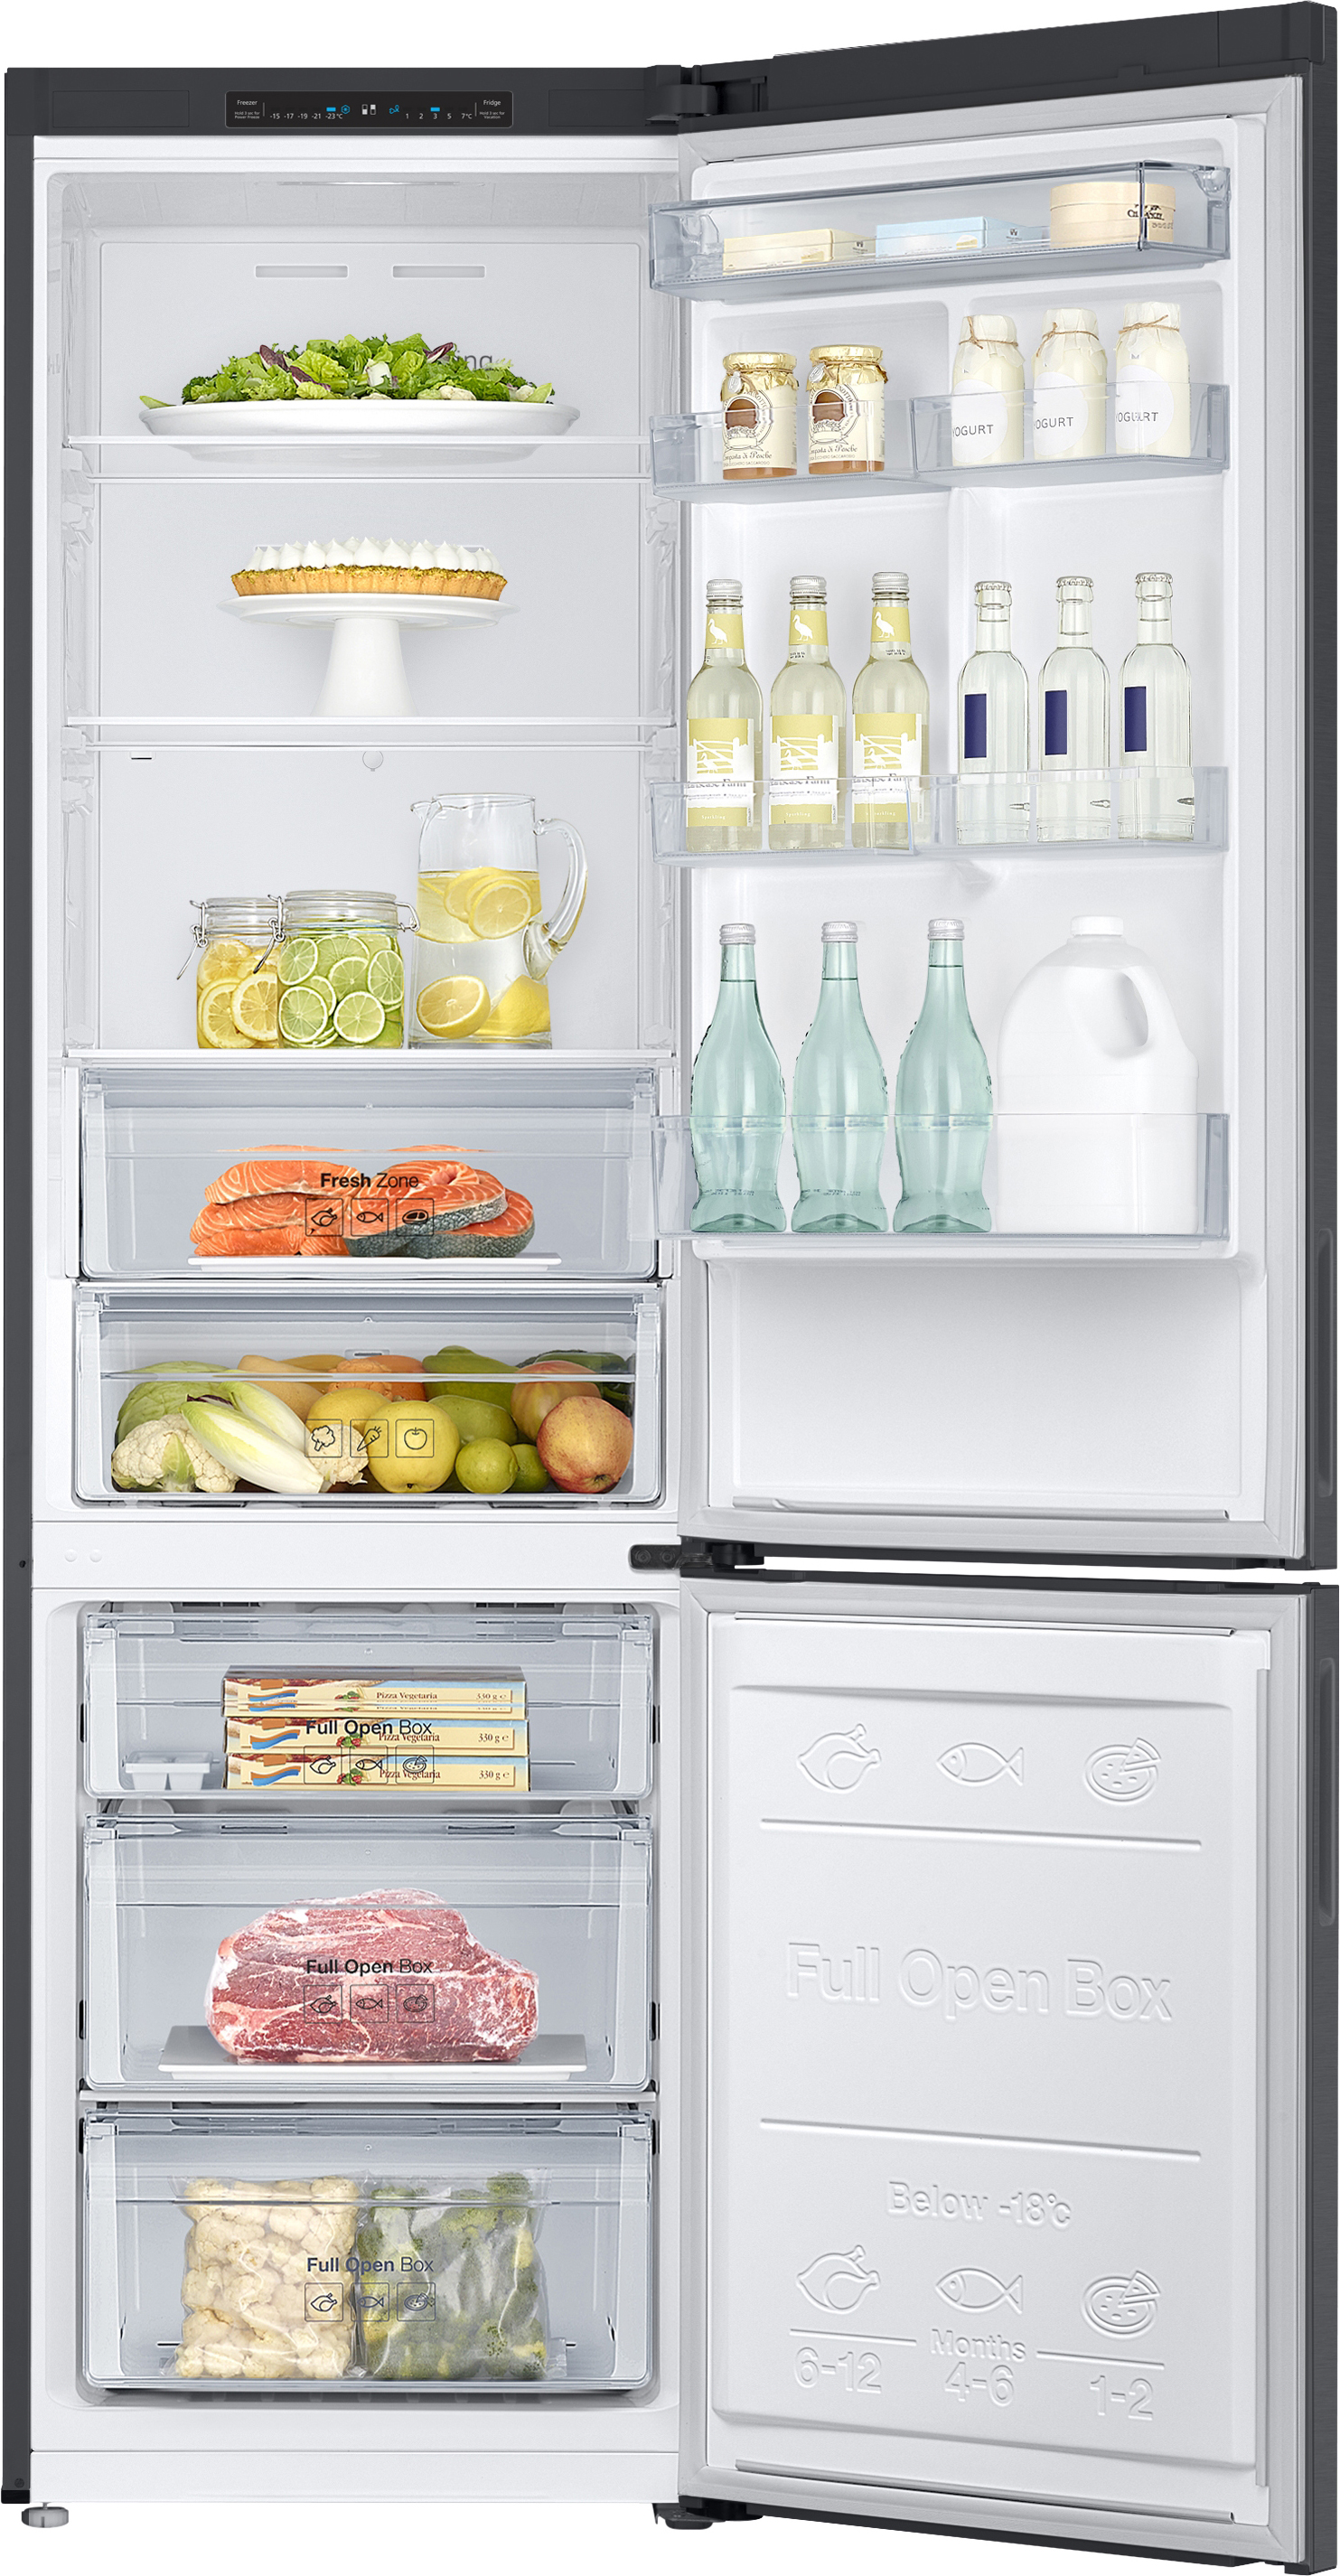 Холодильник Samsung RB37J5000B1, цвет графитовый RB37J5000B1/WT - фото 3